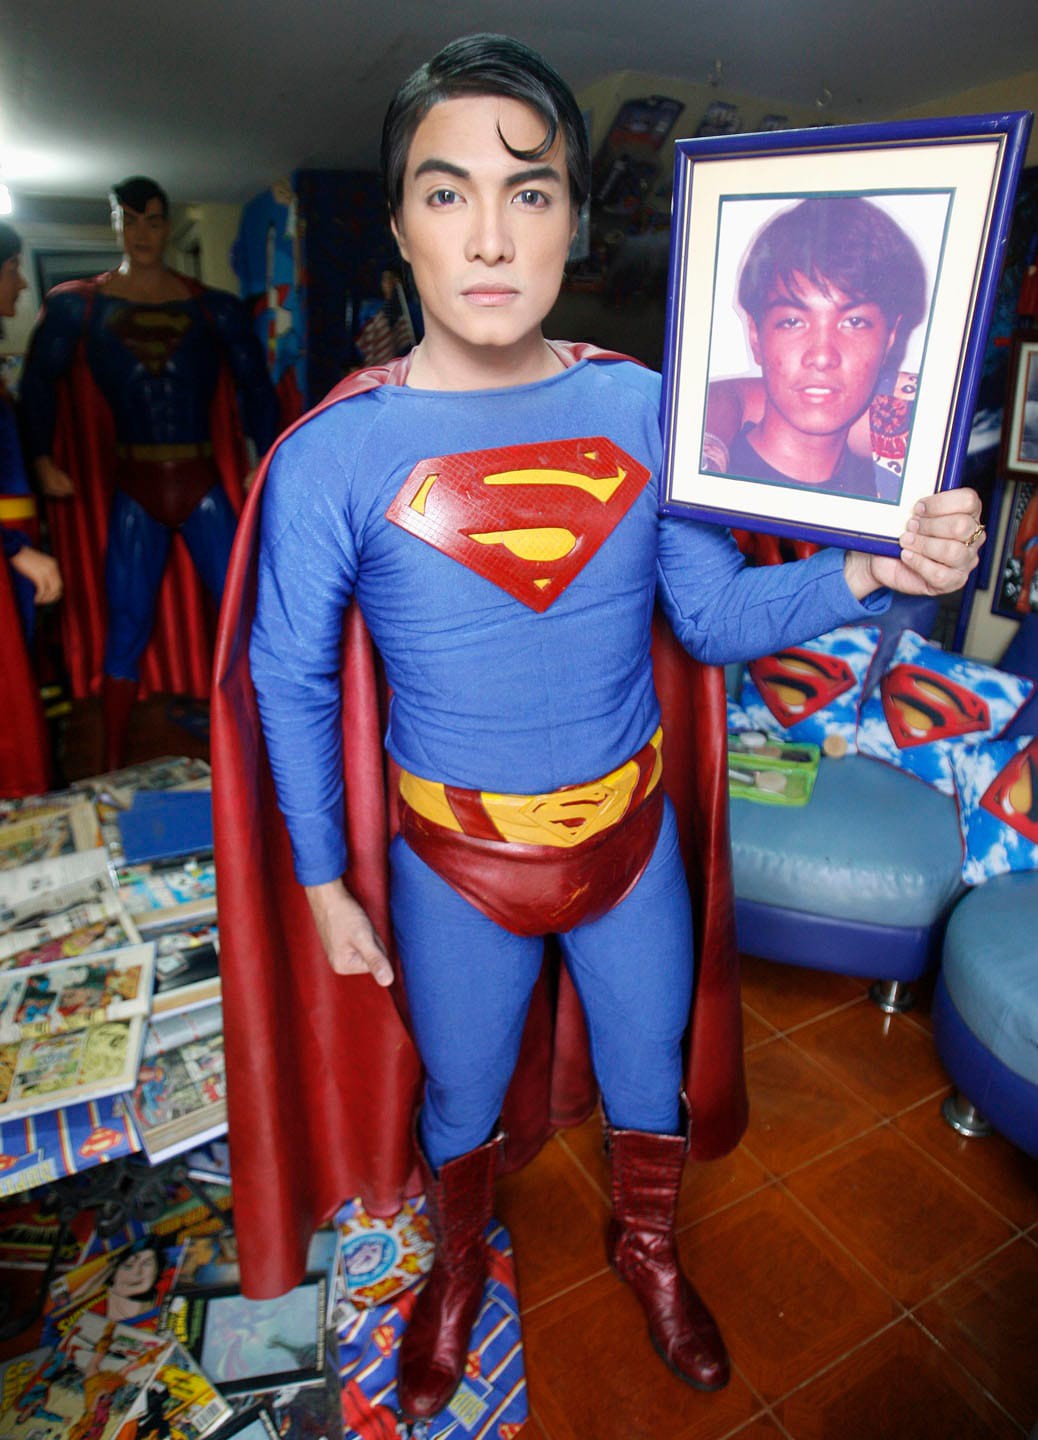 Thánh cuồng Superman, bất chấp đau đớn gần 2 thập kỷ trải qua hơn 30 ca phẫu thuật để trở thành bản sao của thần tượng - Ảnh 4.